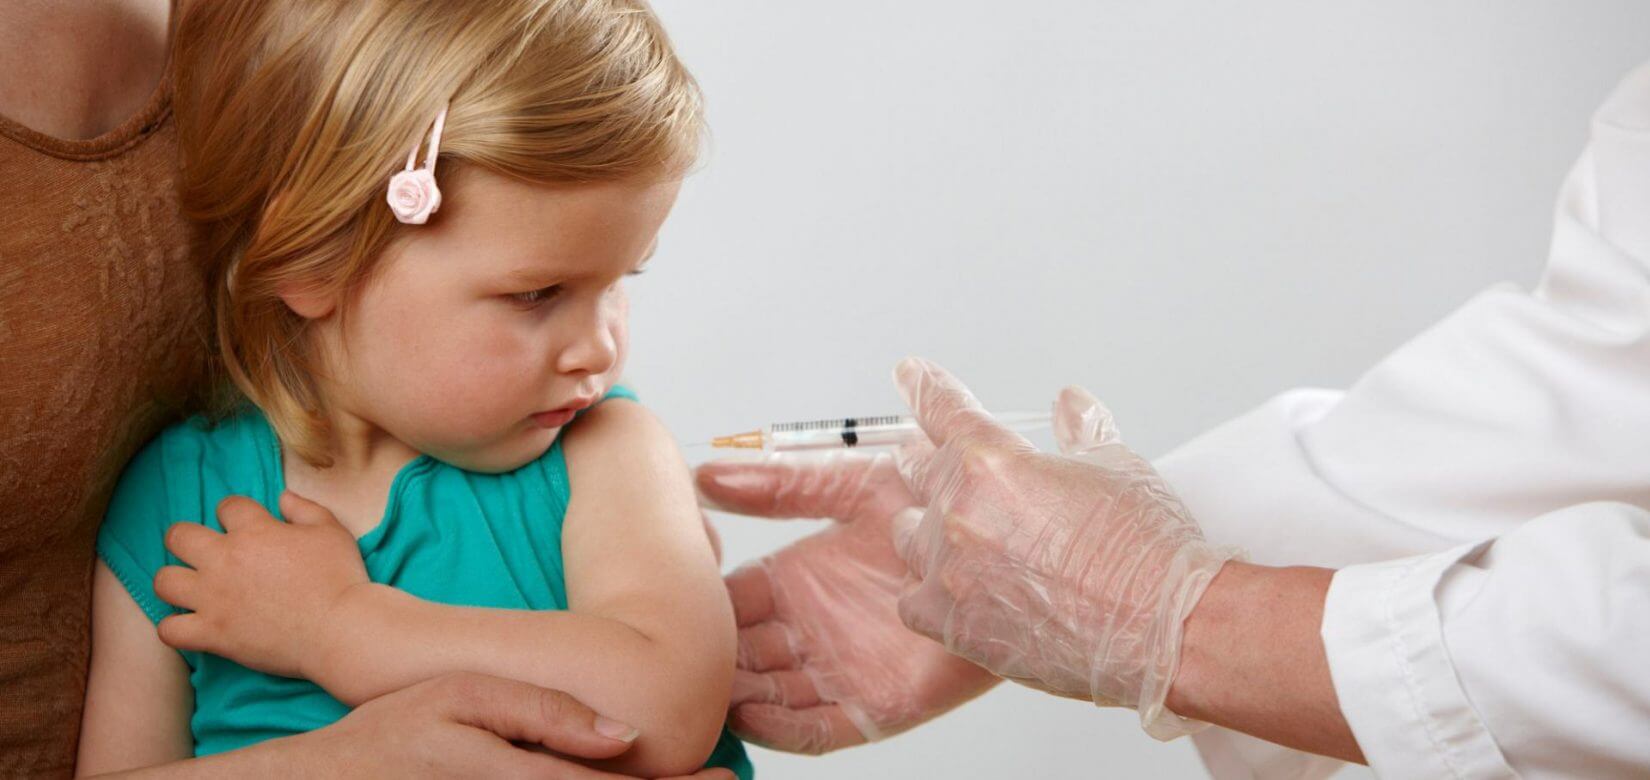 Εμβόλιο Pfizer: Μηδενική η προστασία από λοίμωξη στα παιδιά 5-11 ετών - Πού οφείλεται